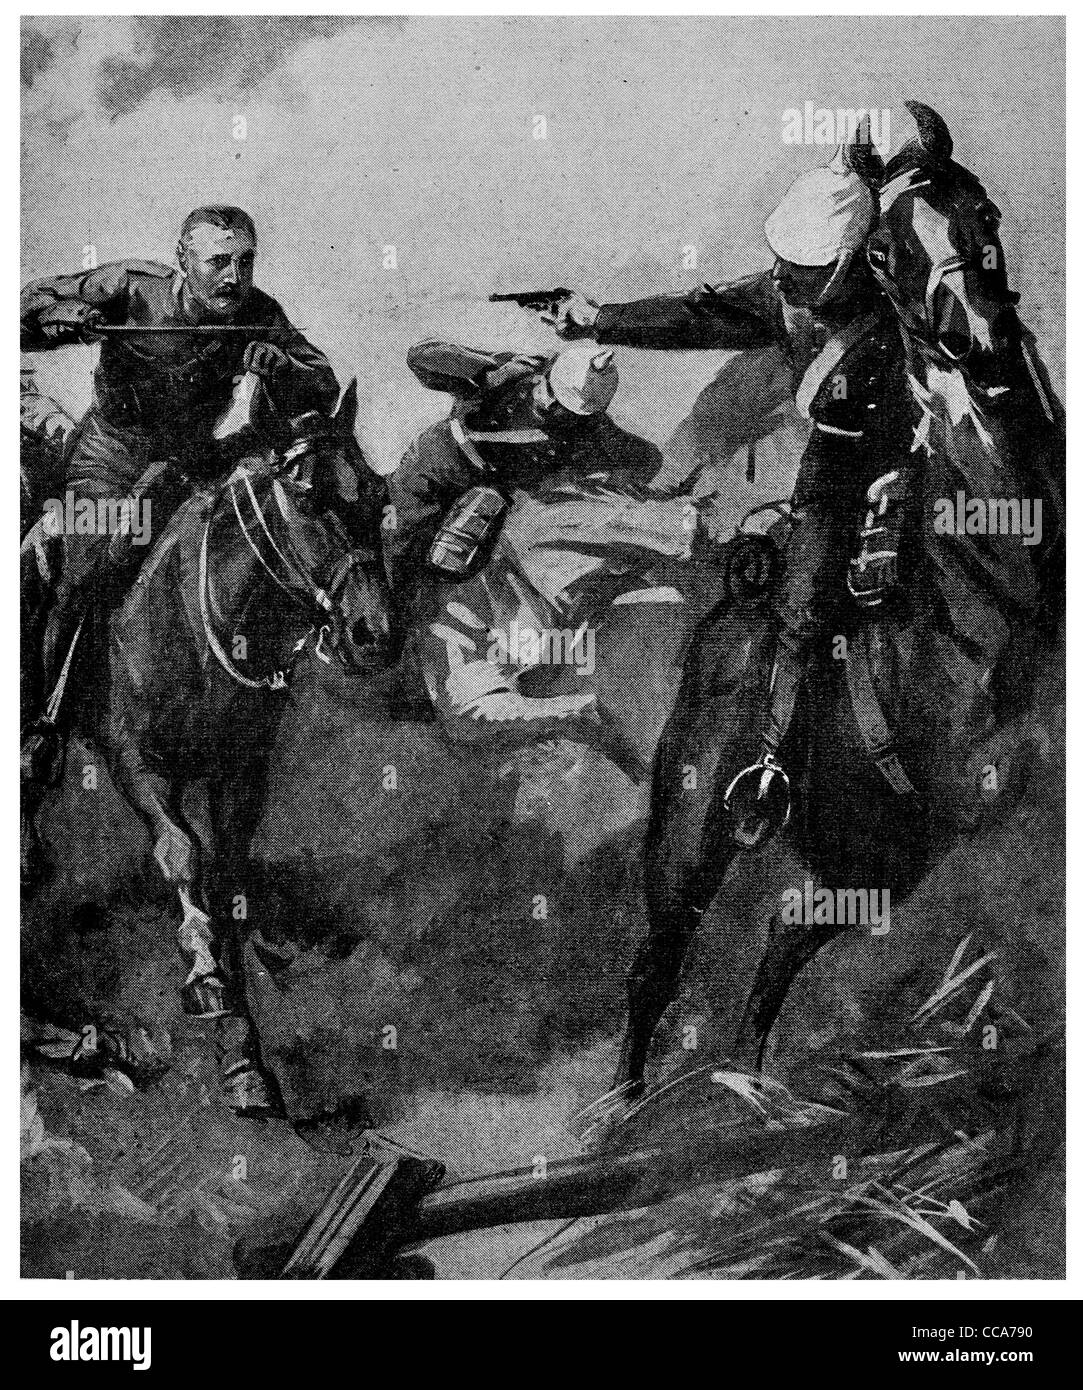 1914 cavalerie britannique contre les Uhlans allemand charge de cavalerie Uhlan chevaux cheval sabre lance pistolet champ de bataille Banque D'Images